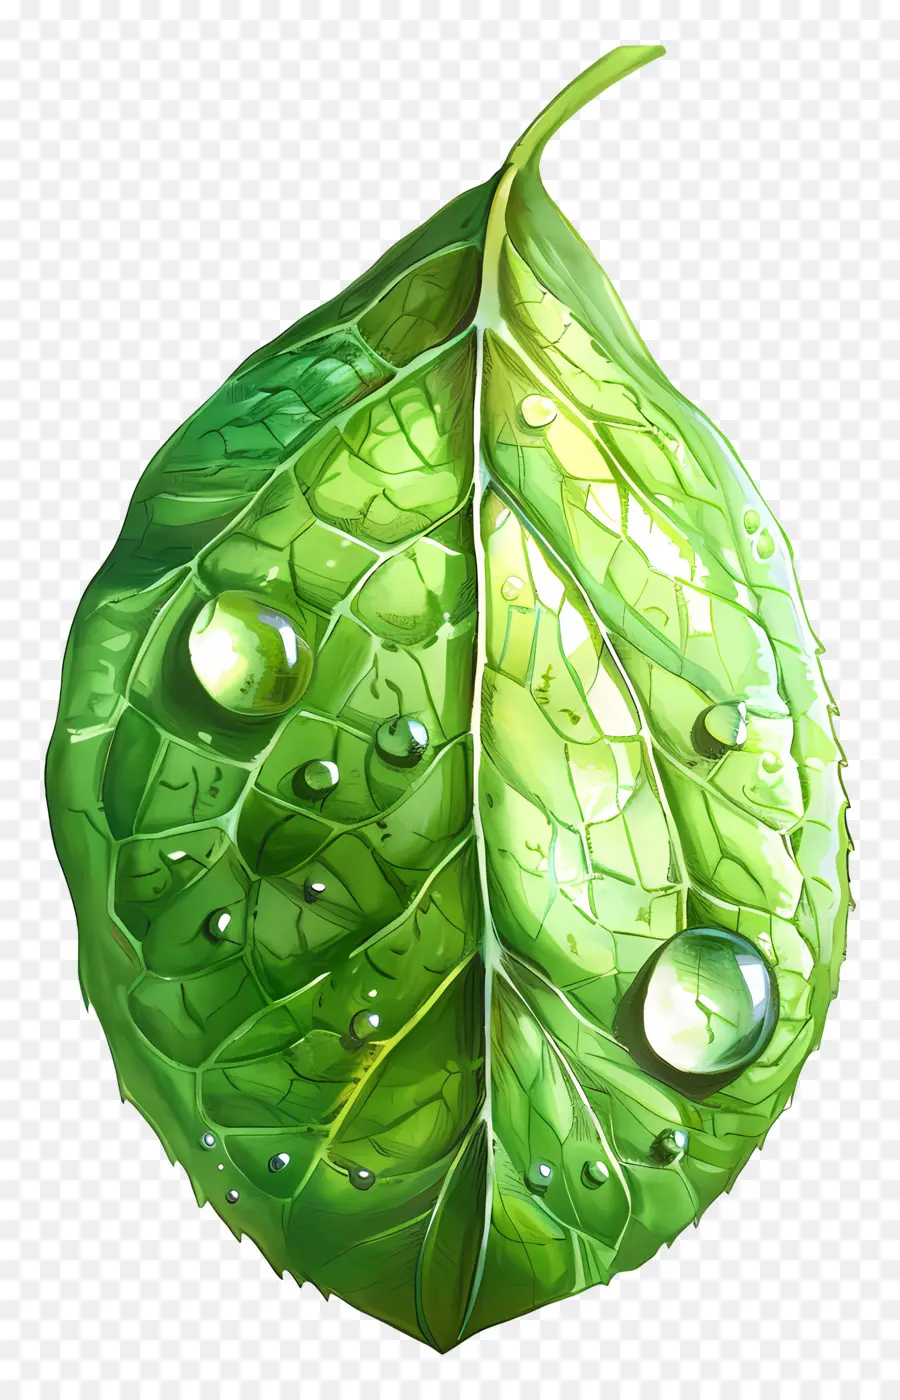 Waterdrop Blattwassertropfenblatt grün - Nasse Blatt mit Wassertropfen bedeckt